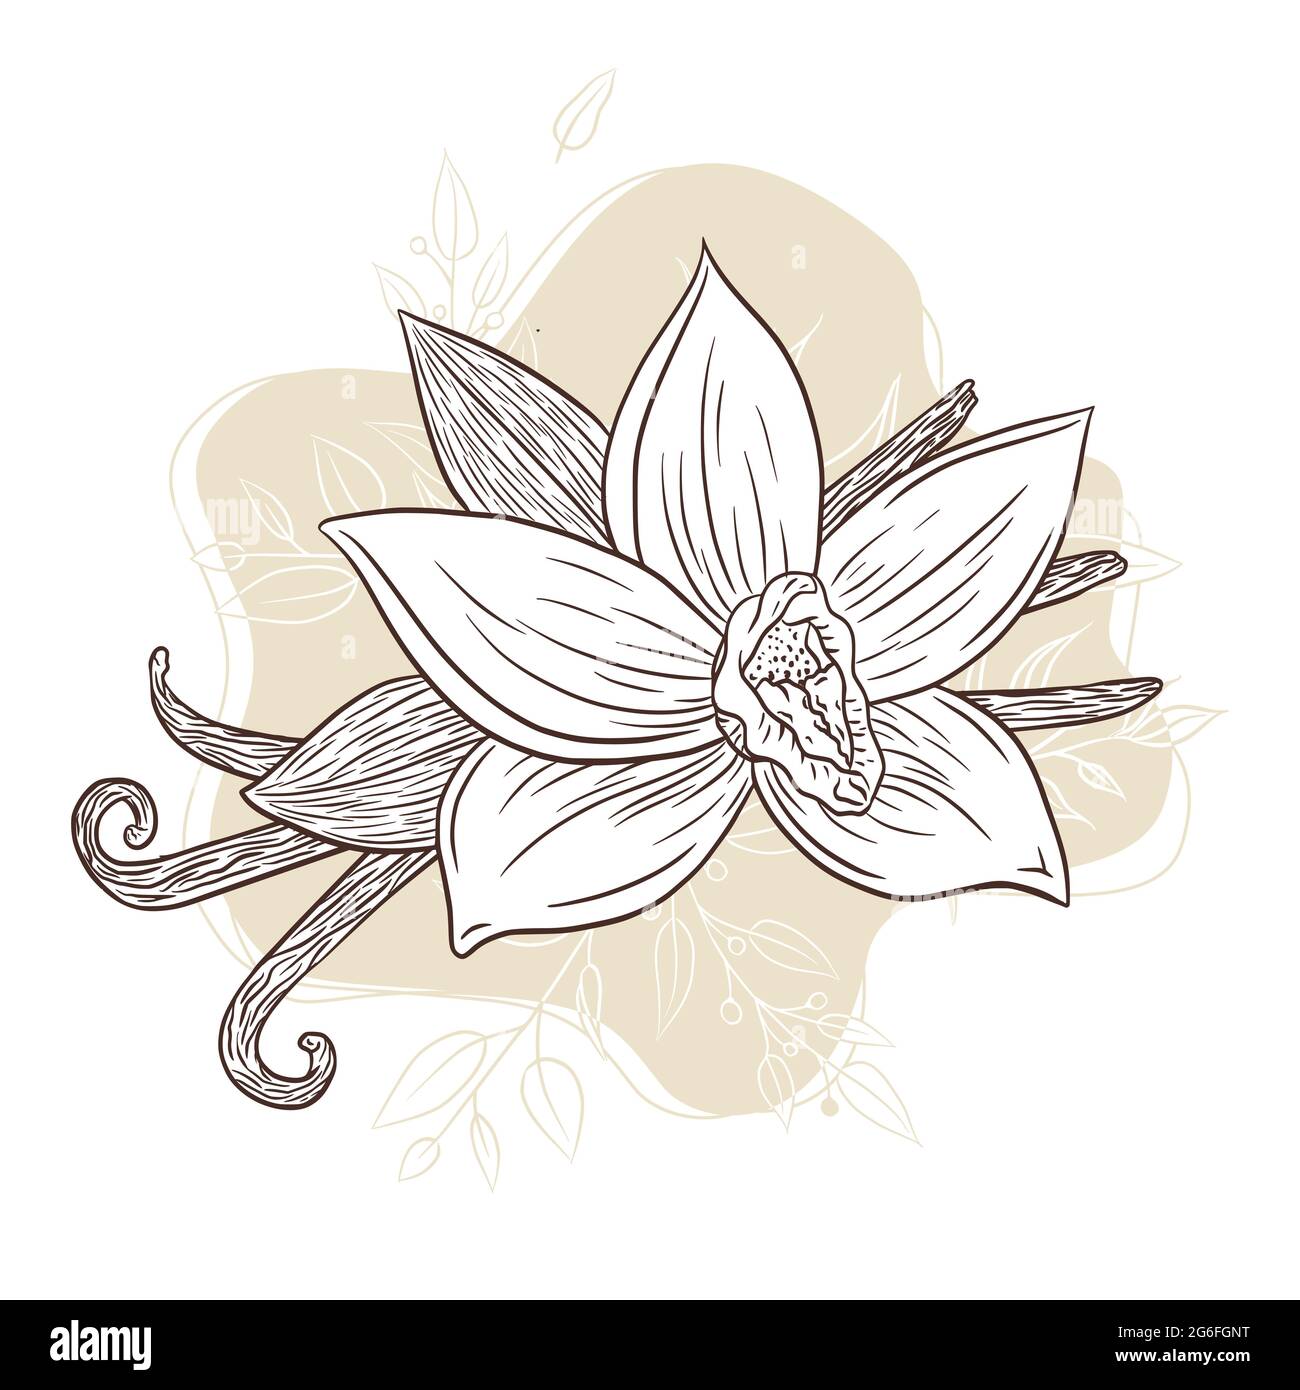 Với hoa vanila và que vanila vẽ tay trên nền động rối kiểu trừu tượng, bạn sẽ nhận thấy rằng tình yêu đối với nghệ thuật thật sự là không giới hạn. Hãy xem những bức tranh tuyệt đẹp này và hòa mình vào thế giới nghệ thuật đầy phong phú và đa dạng này.